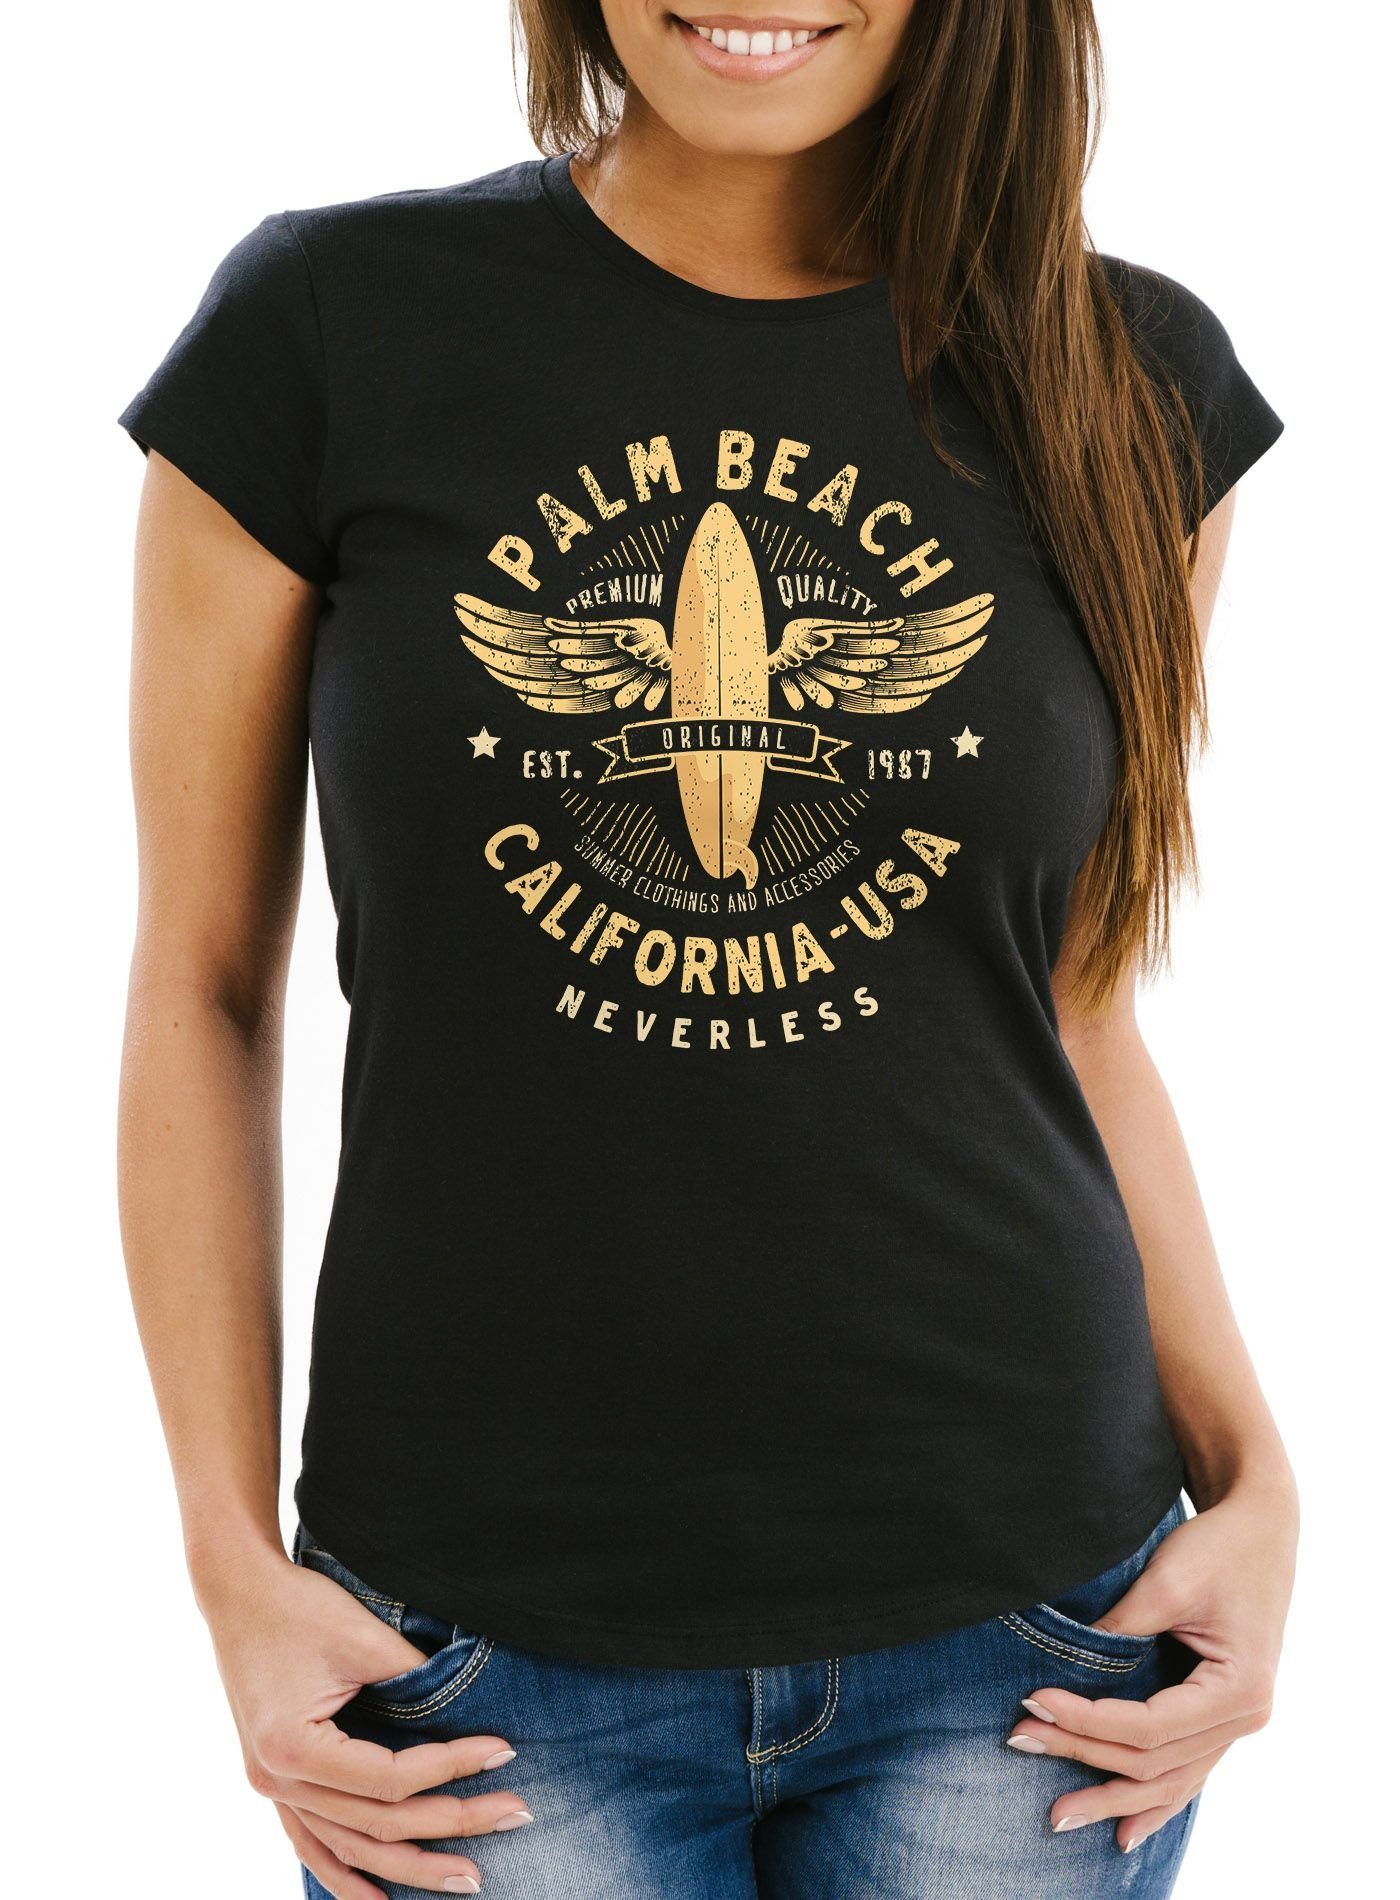 Neverless Print-Shirt »Damen T-Shirt Surfing Motiv Vintage Effekt Palm  Beach California USA Schriftzug Fashion Streetstyle Slim Fit Neverless®«  mit Print